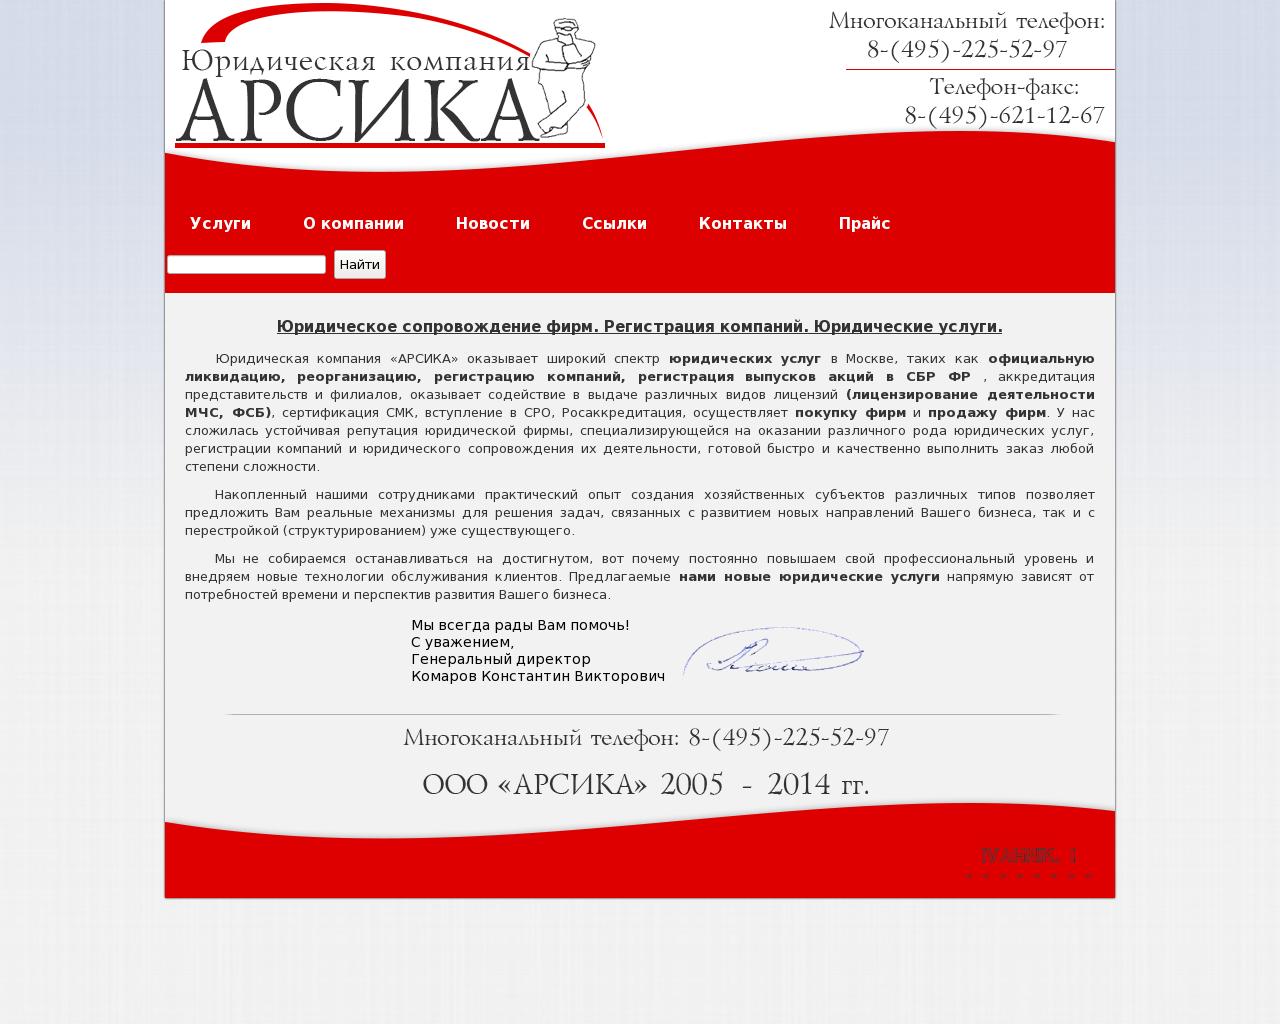 Изображение сайта arsika.ru в разрешении 1280x1024